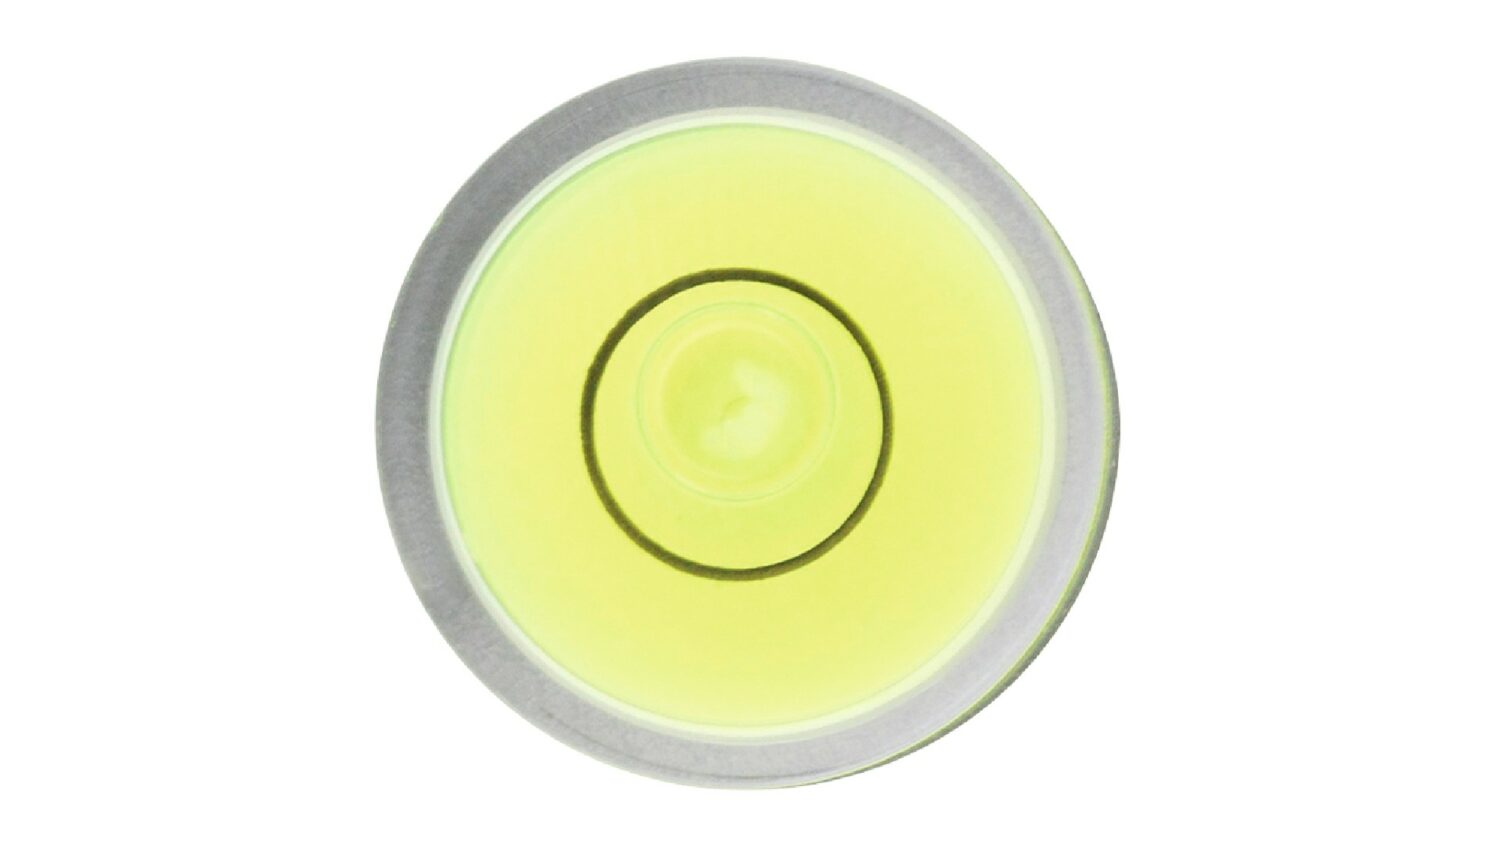 Bild der Sola 69213101 Dosenlibelle 12 mm DB 12 mit grüner Libellenflüssigkeit